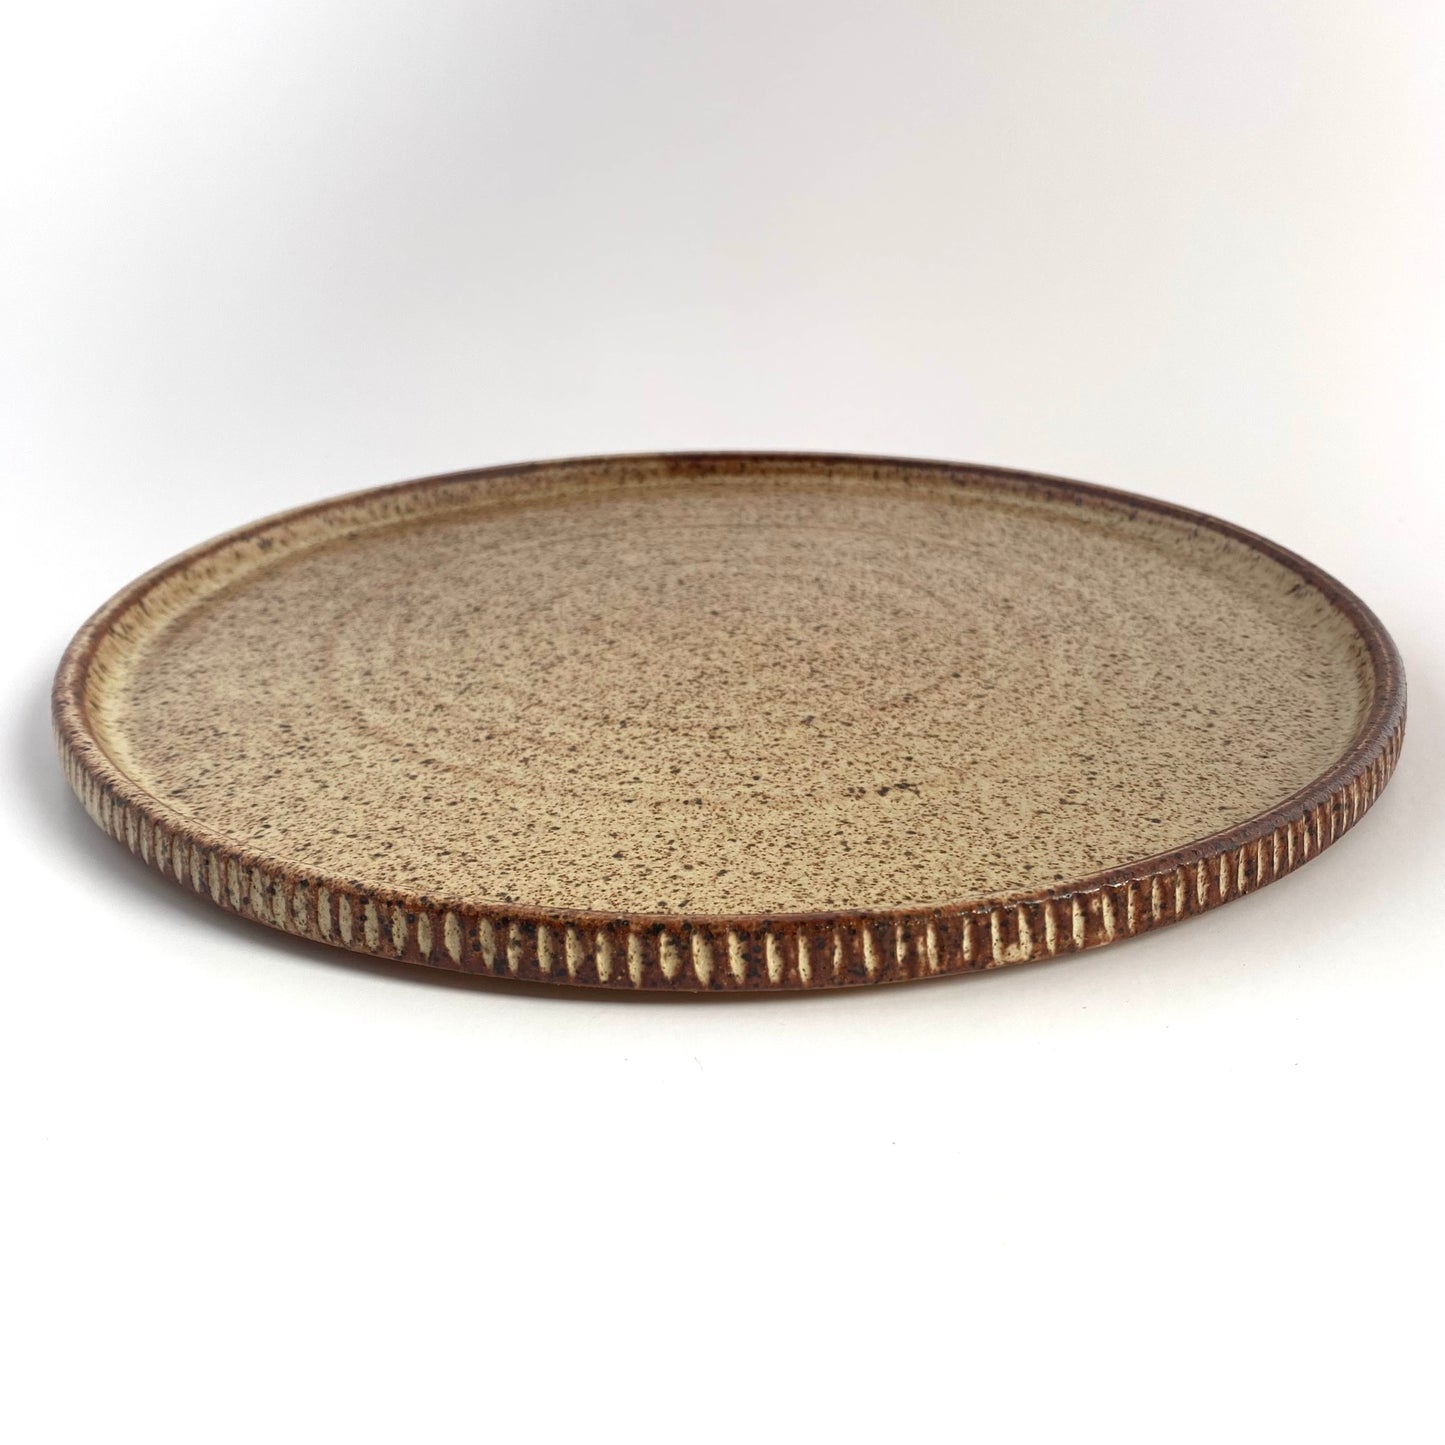 Coin Dinner Plate: Cinnamon